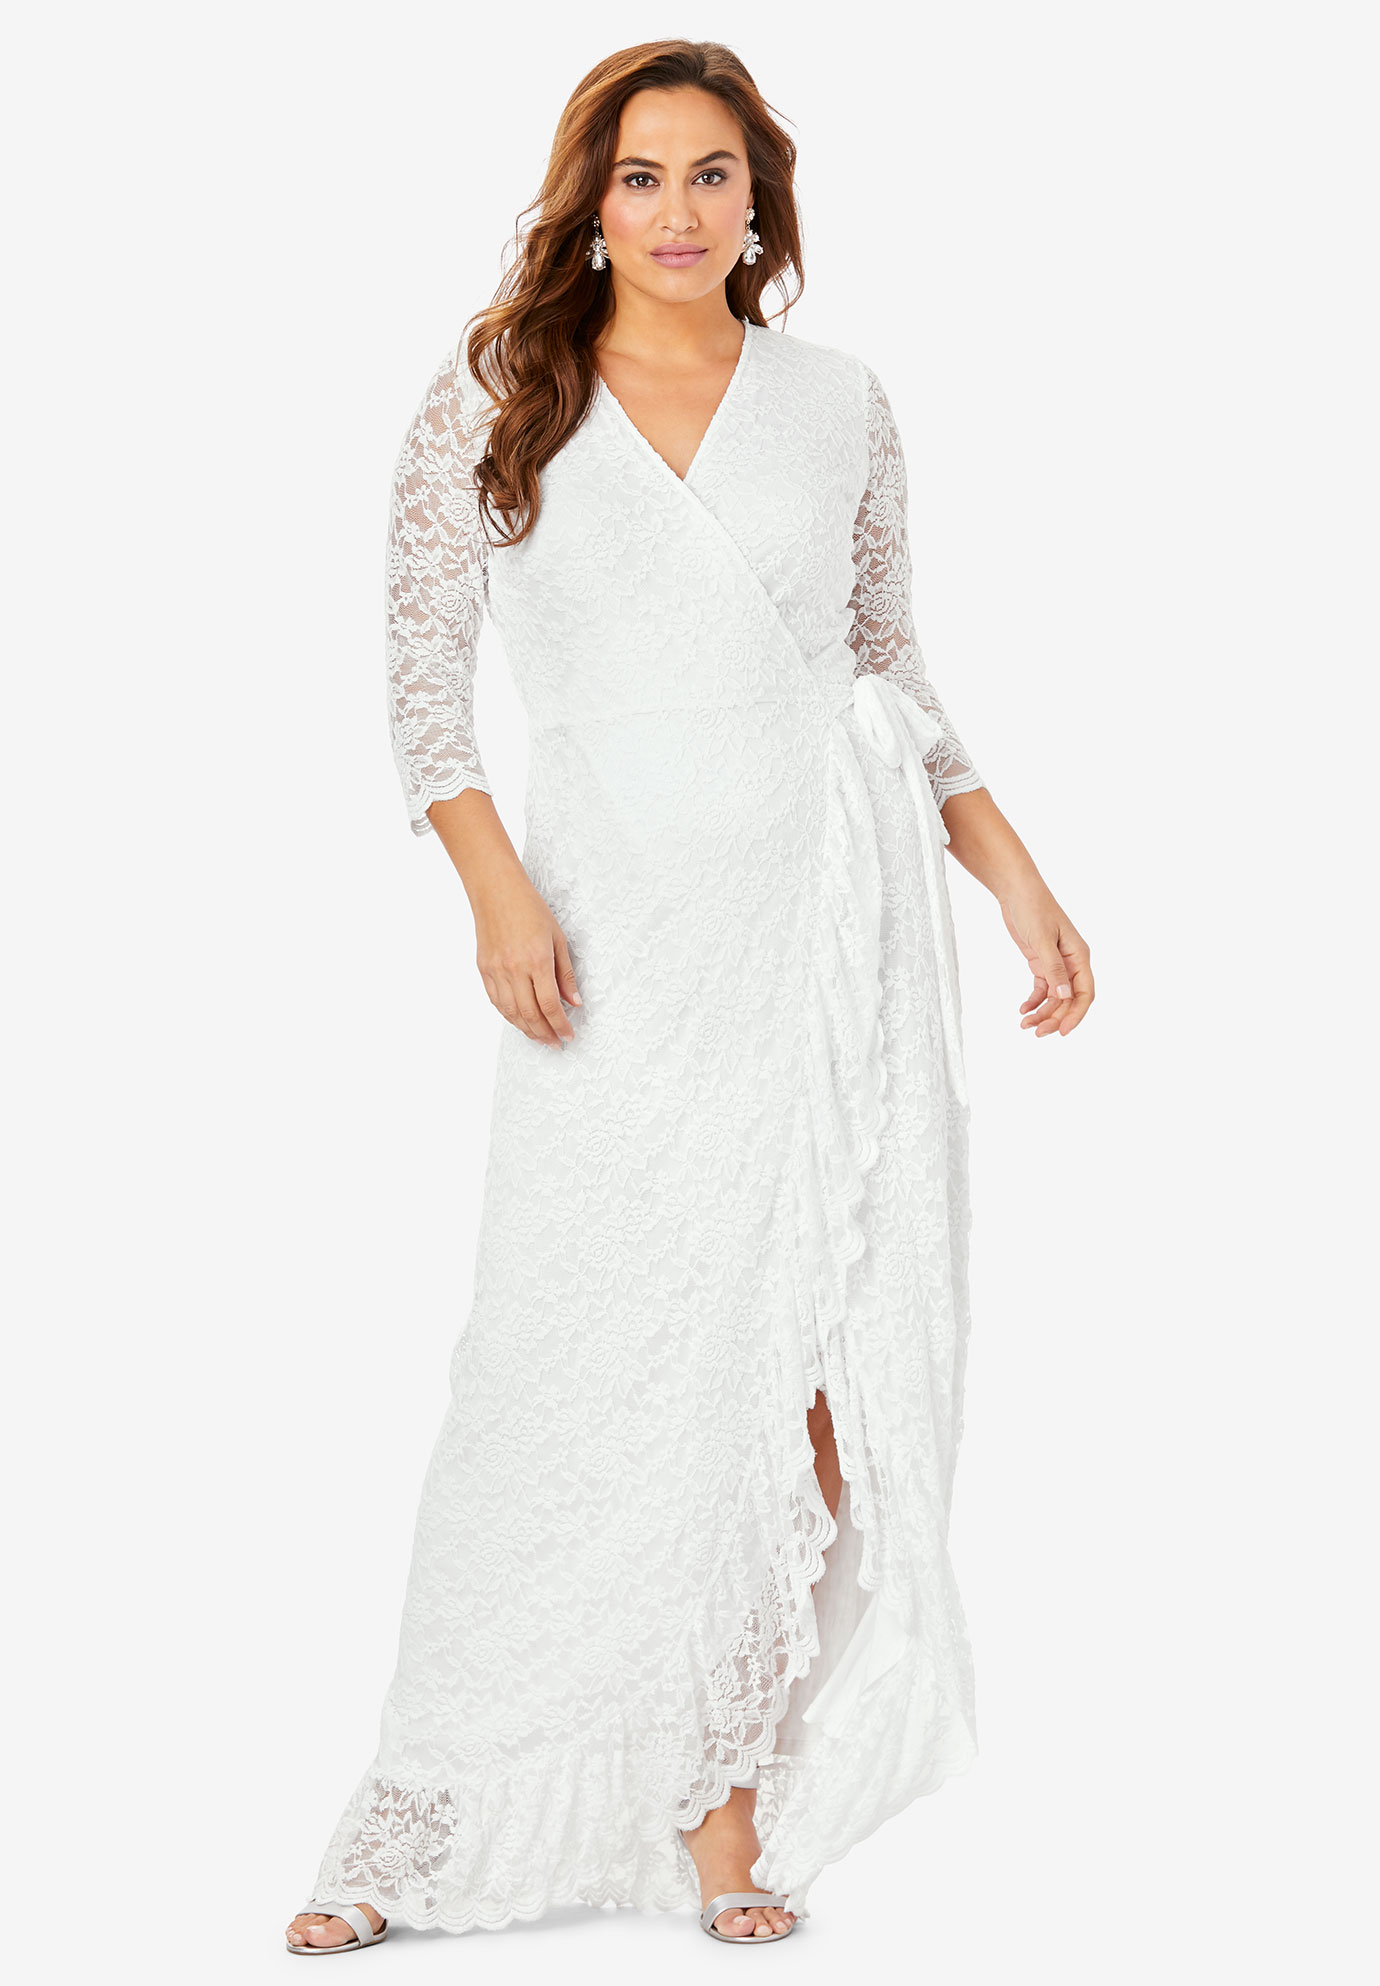 white lace wrap dress